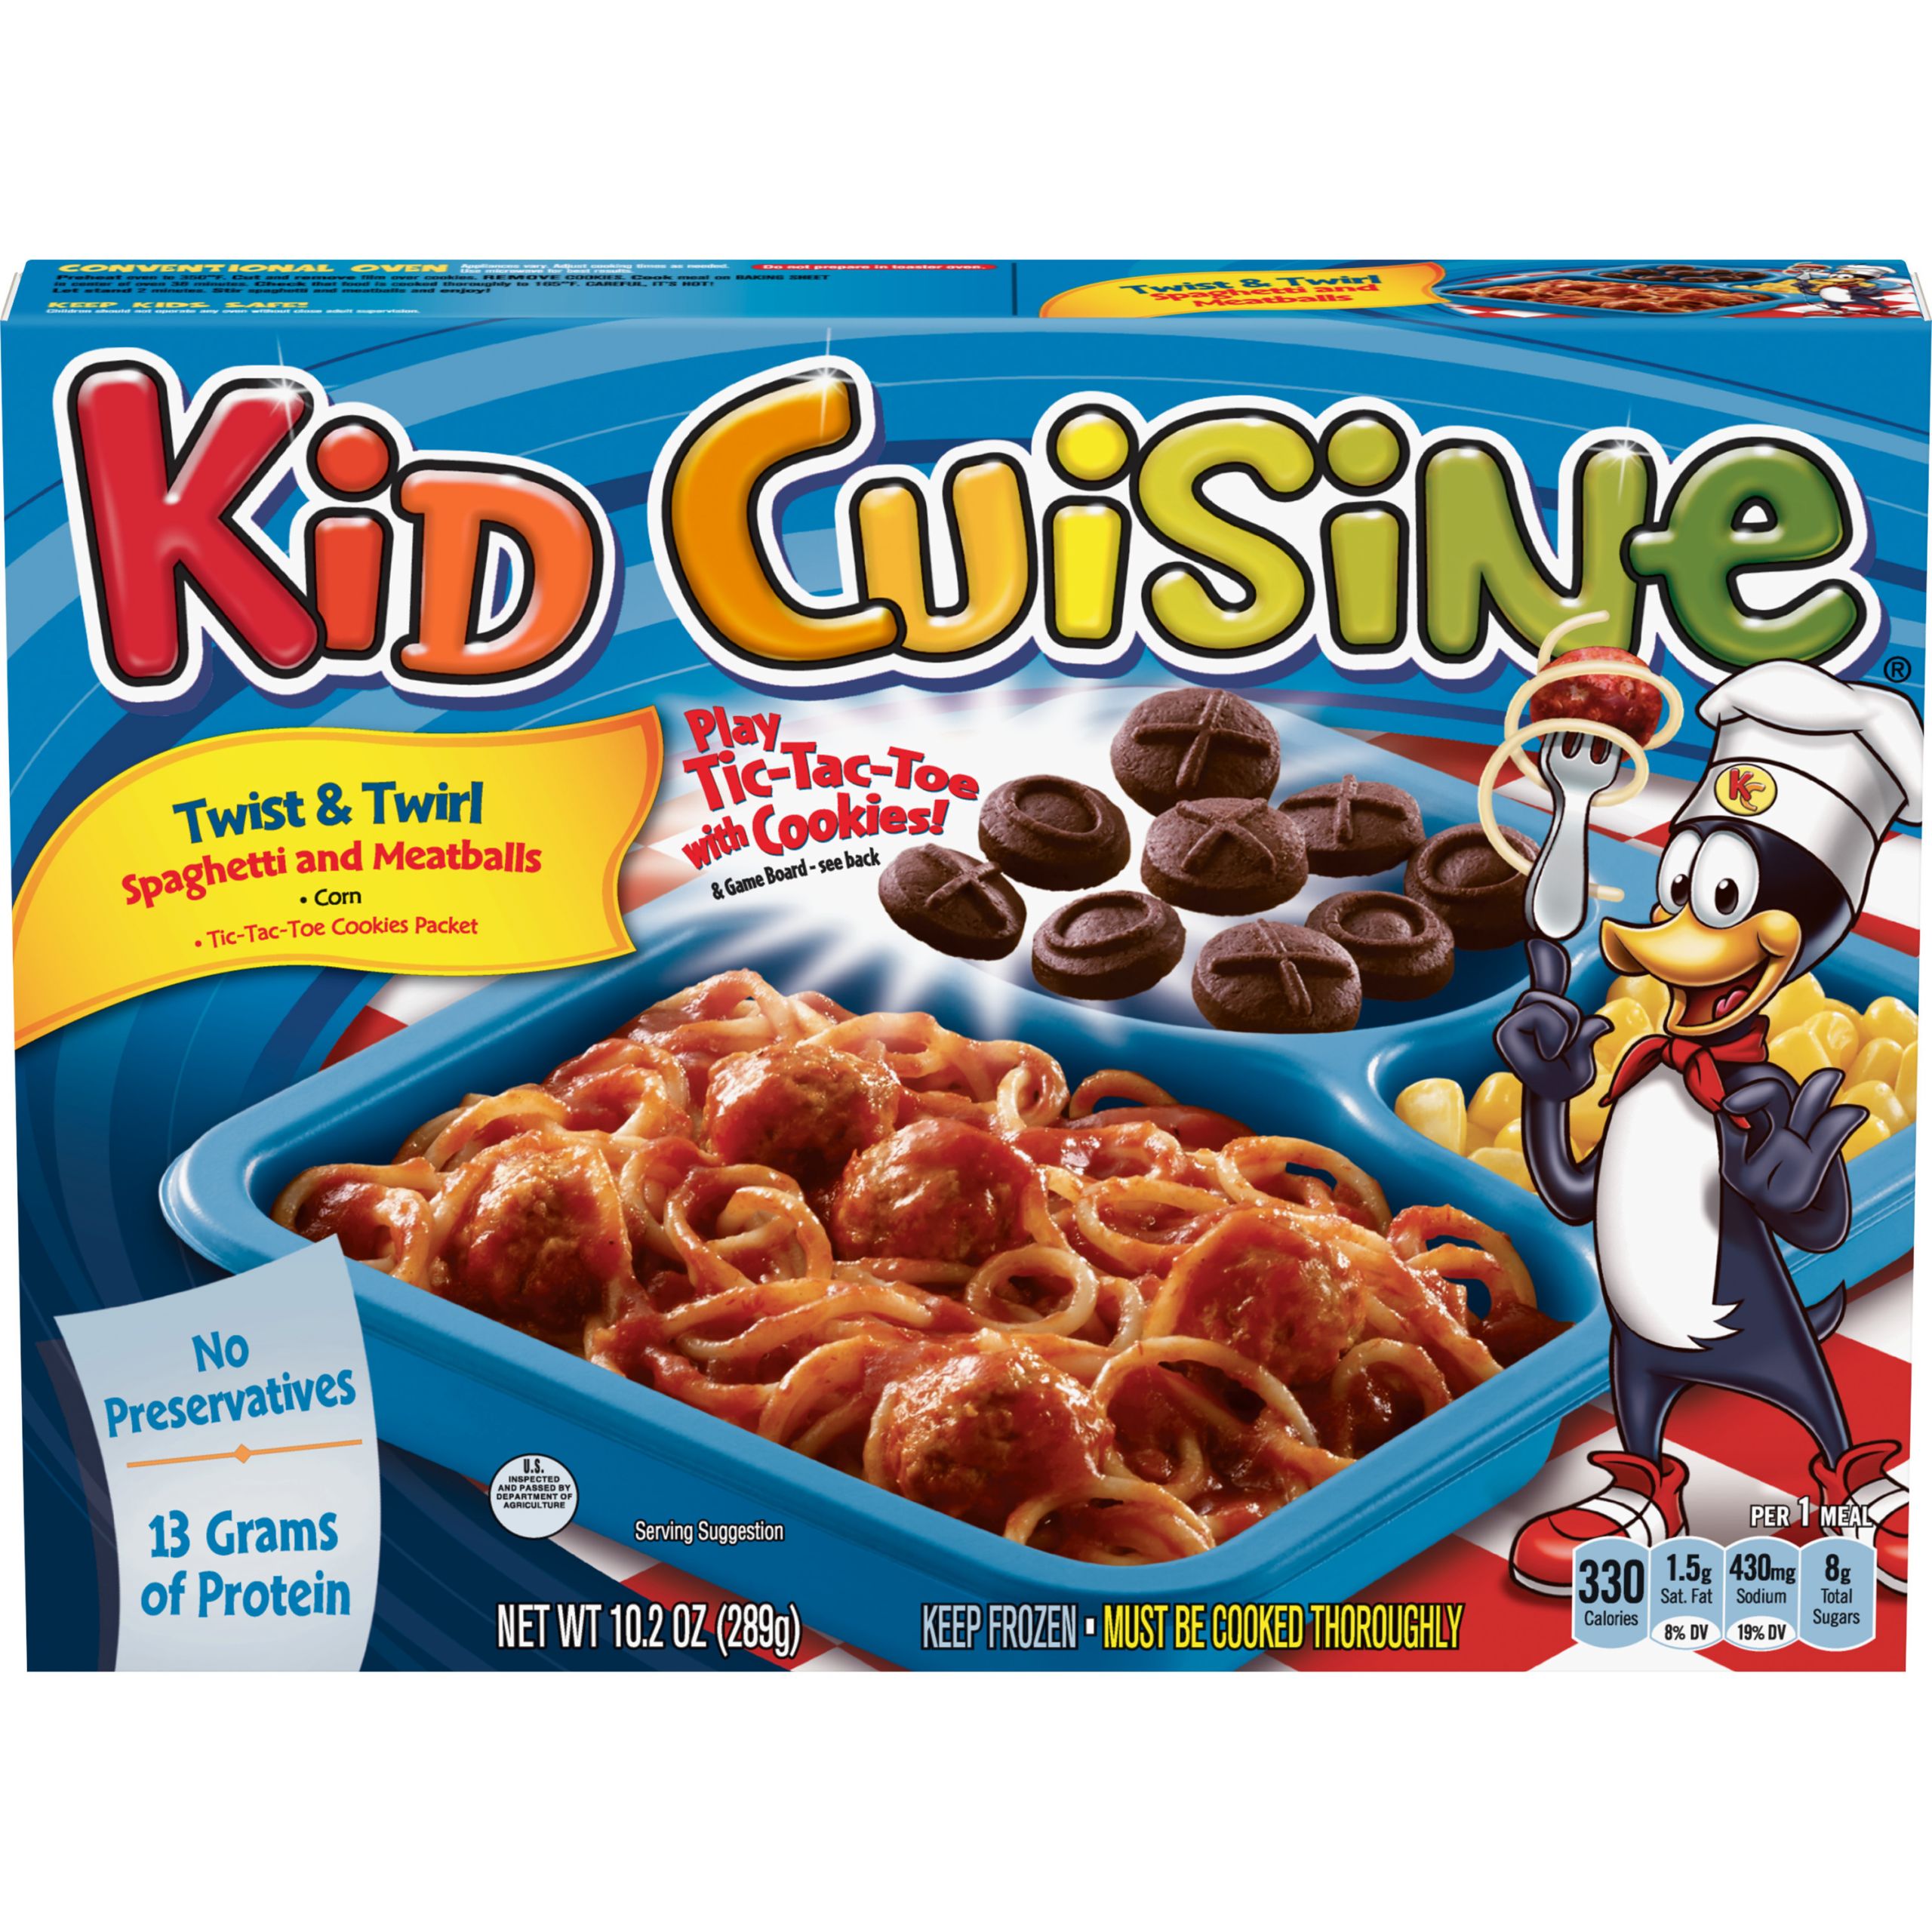 Kids Frozen Dinners
 KID CUISINE Twist & Twirl Spaghetti and Meatballs Frozen